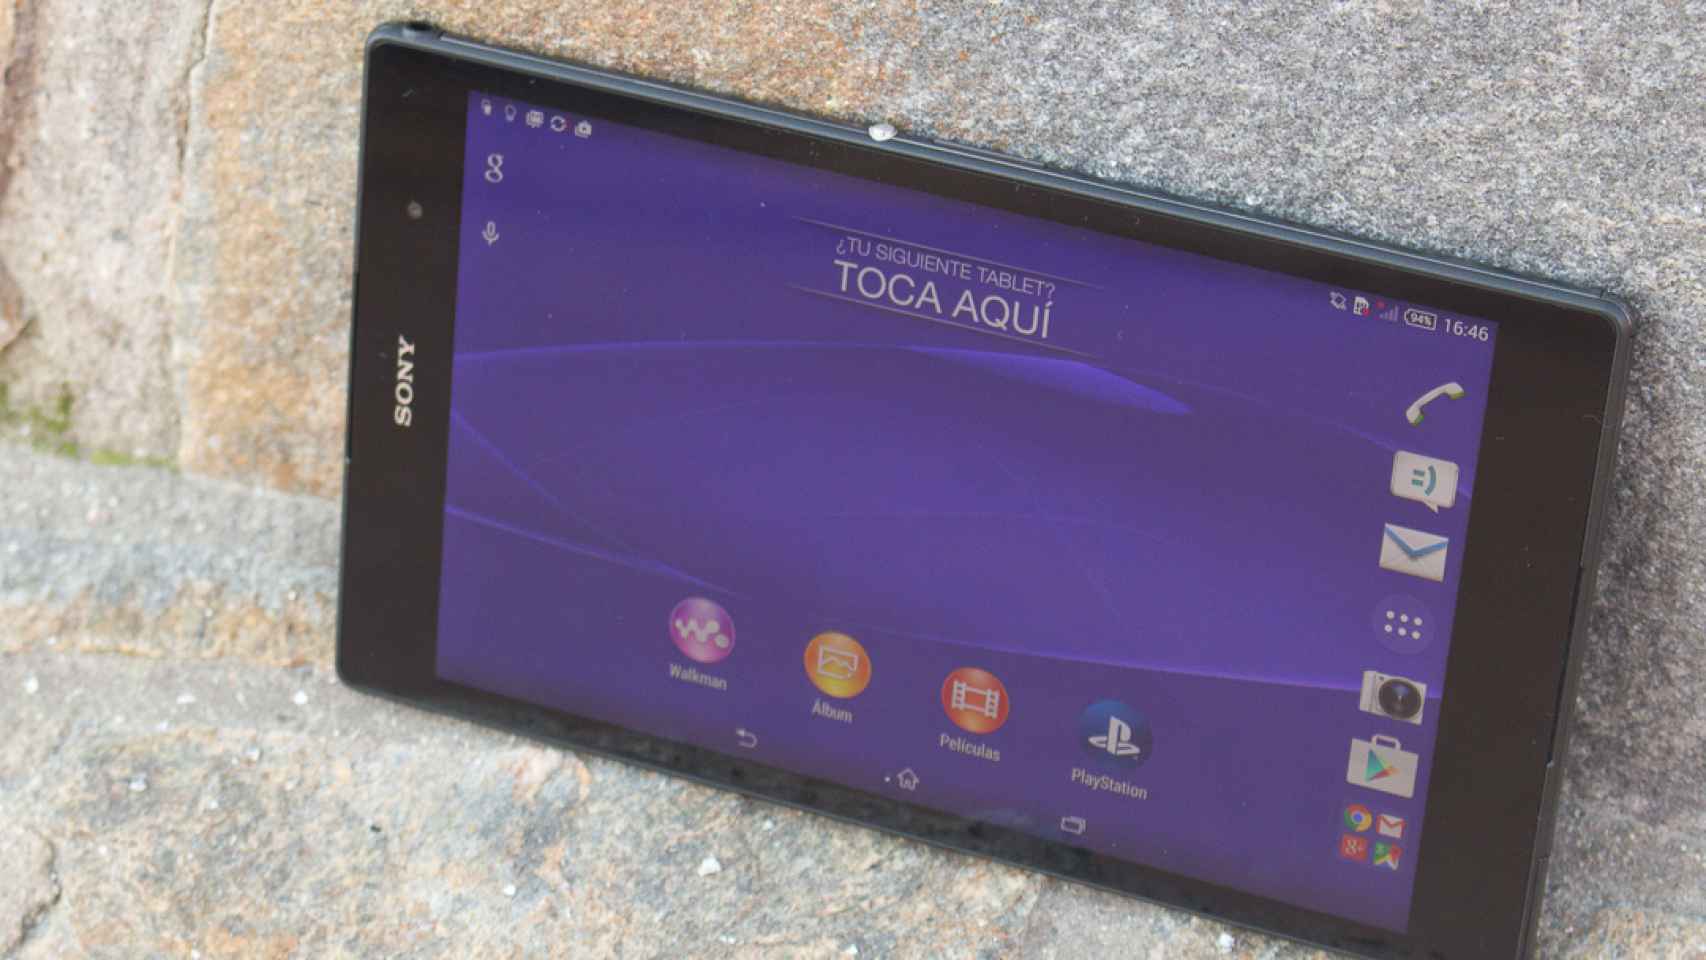 Sony Xperia Z3 Tablet Compact: análisis y experiencia de uso